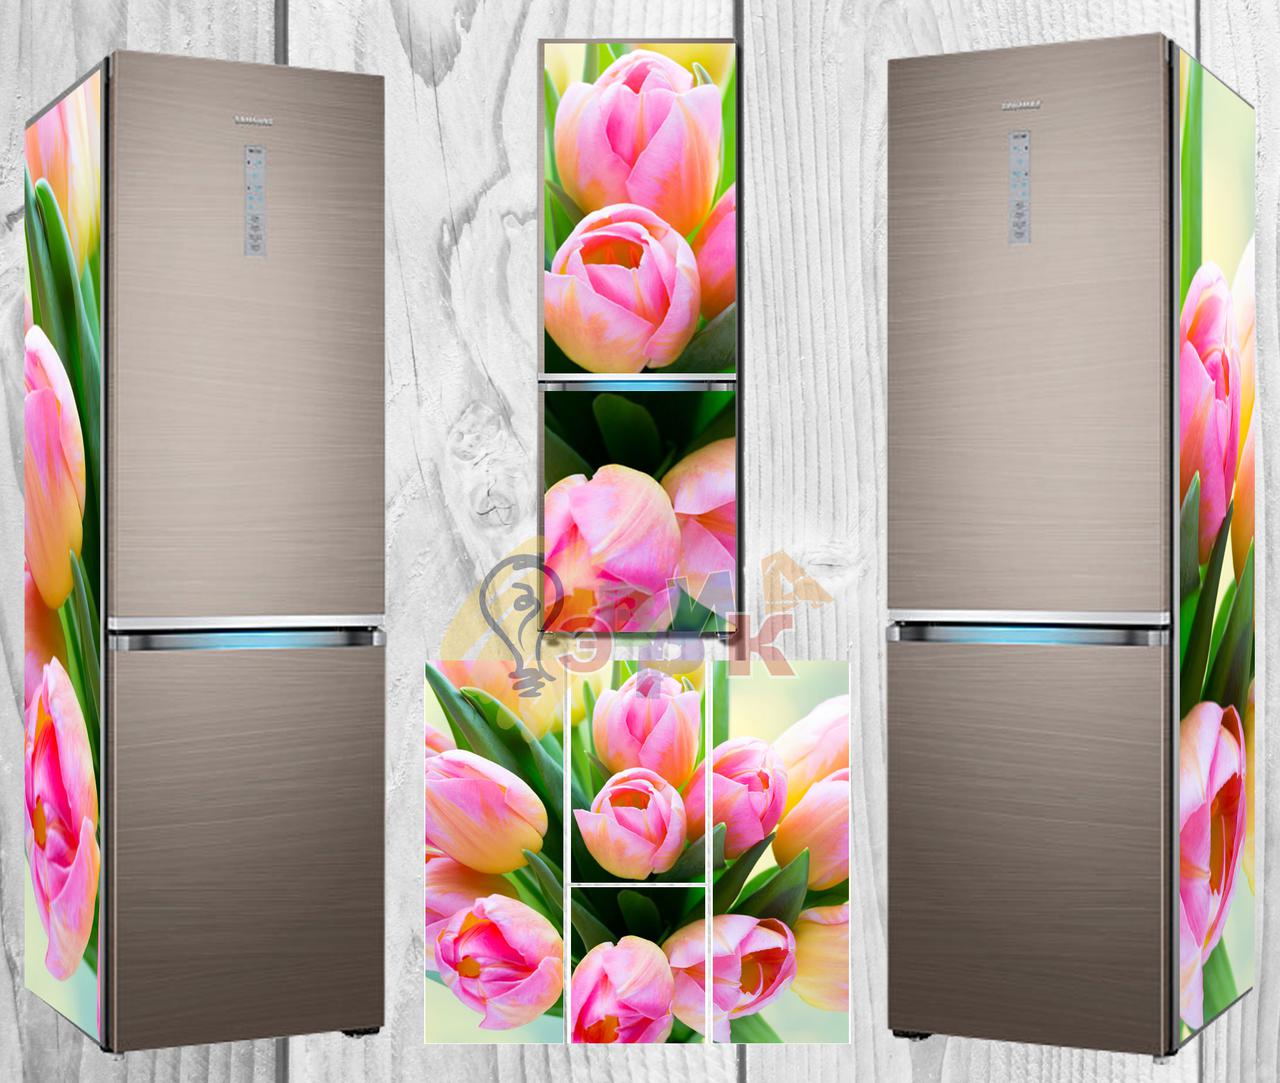 Тюльпаны в холодильнике без воды можно ли. Тюльпаны в холодильнике. Холодильник под тюльпаны. Цветочный холодильник с тюльпанами. Холодильник для хранения тюльпанов.